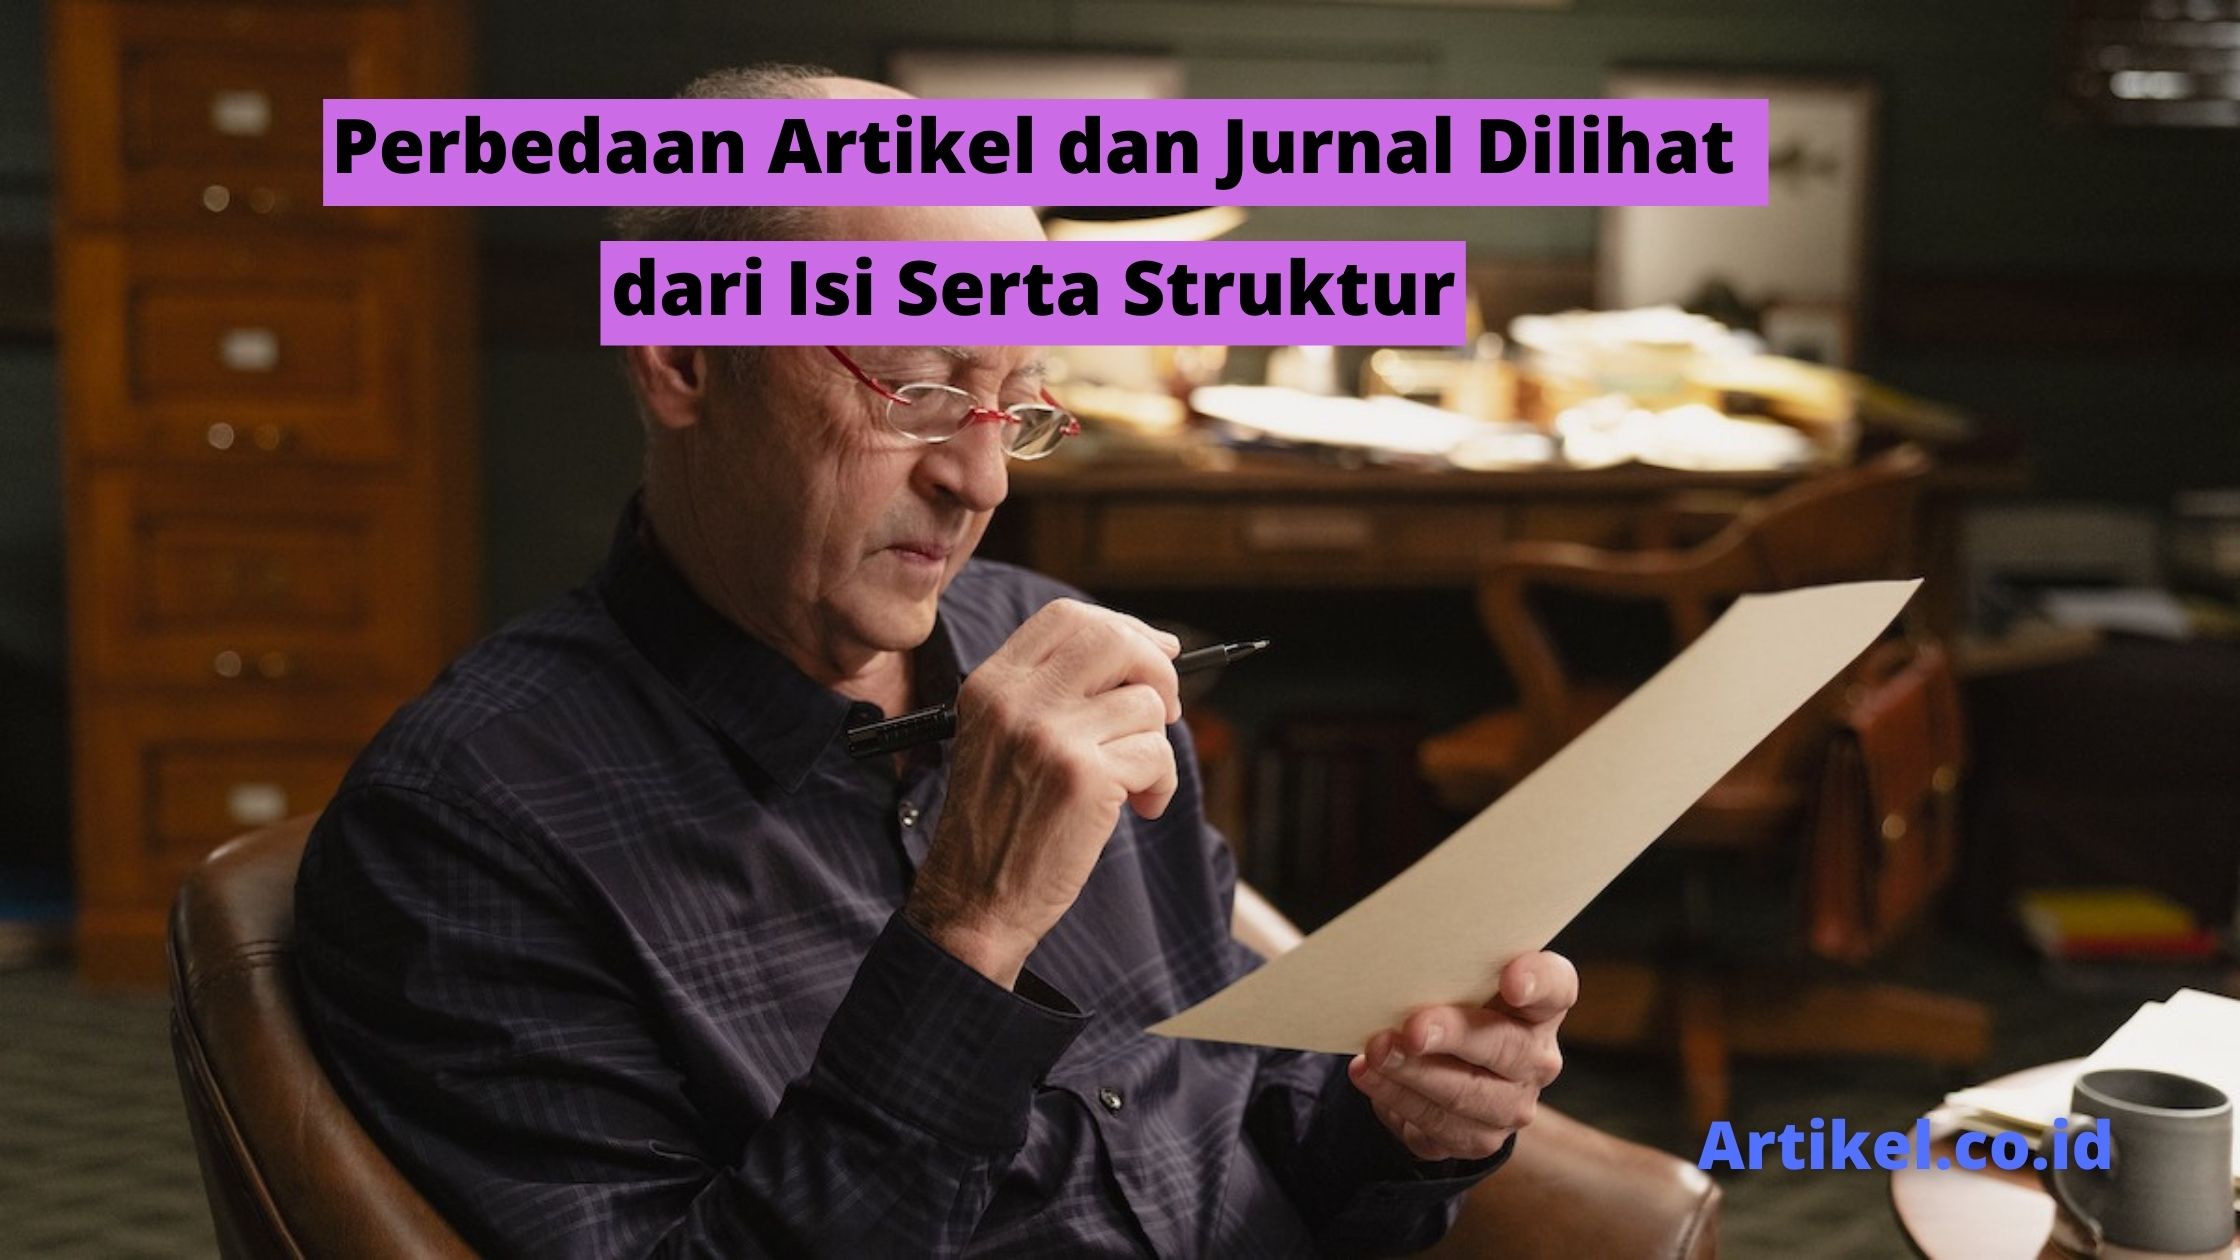 Read more about the article Perbedaan Artikel dan Jurnal Dilihat dari Isi Serta Struktur